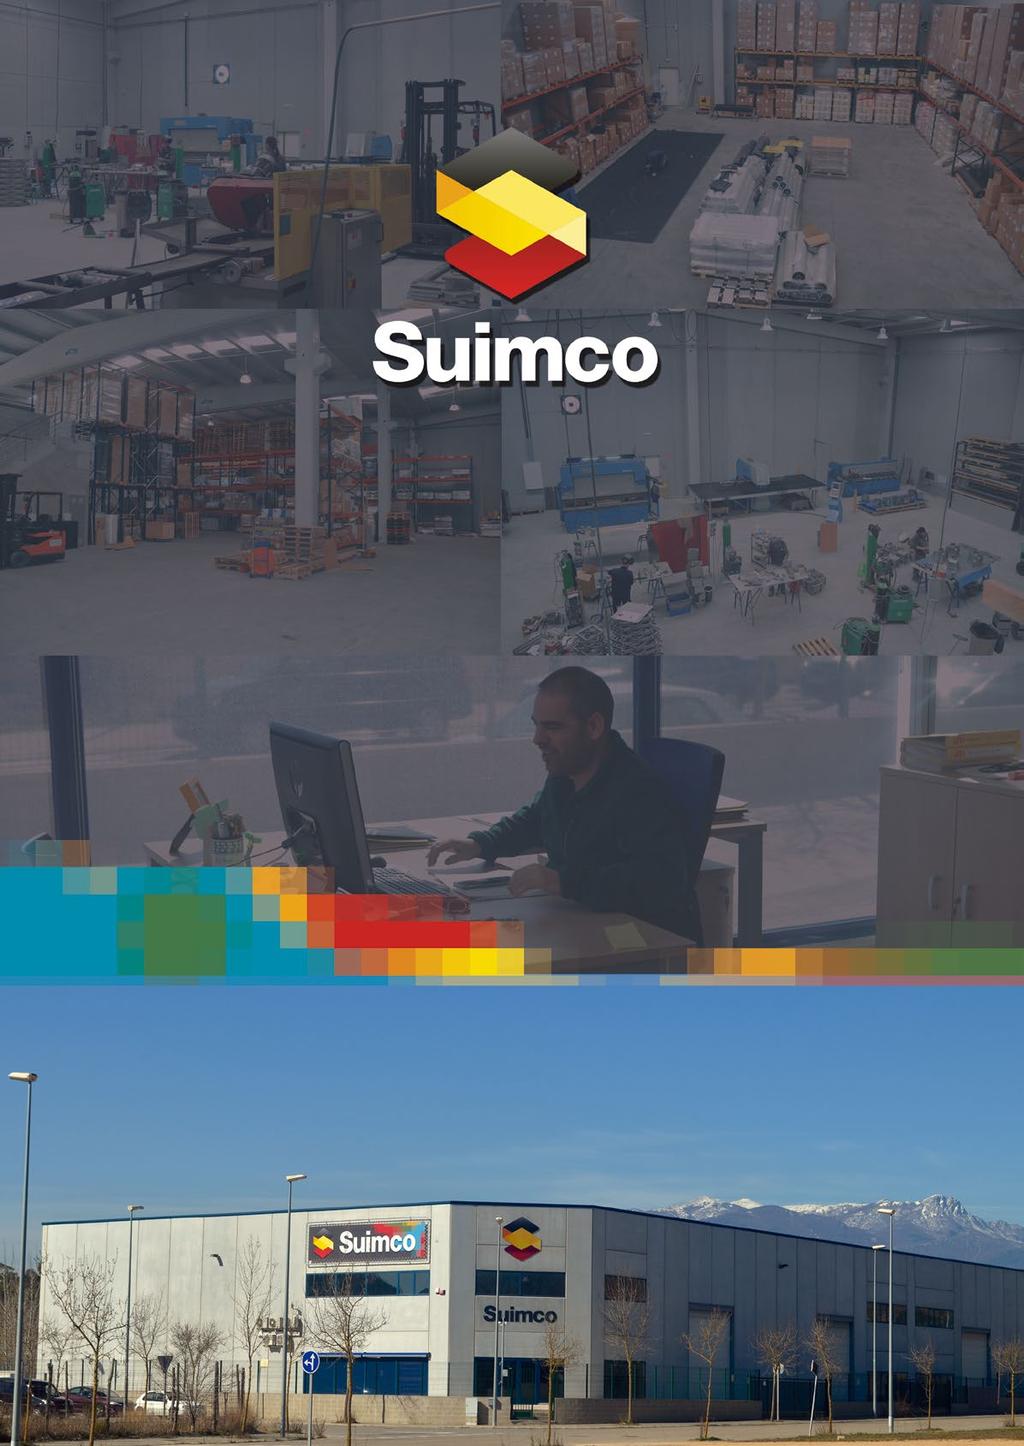 SUIMCO es una empresa fundada en el año 2009, por personas con una sólida experiencia en la gestión, aplicación, desarrollo y fabricación de productos para el drenaje de aguas superficiales y